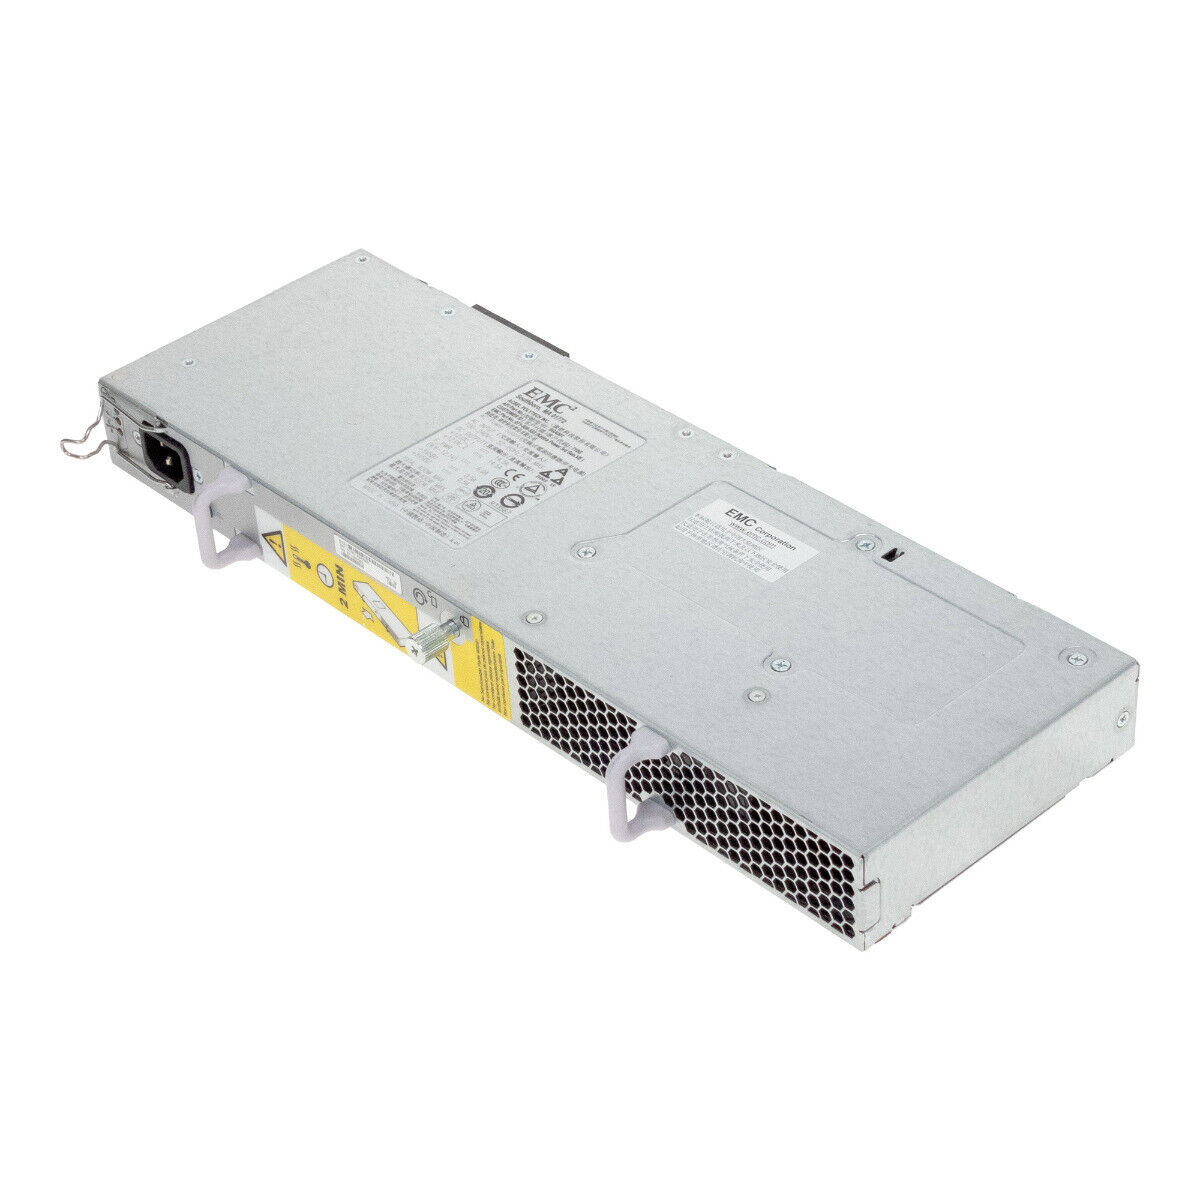 Server Power Supply EMC 071-000-553 Rev:0 9 400W SGA001 For Vnx Dae